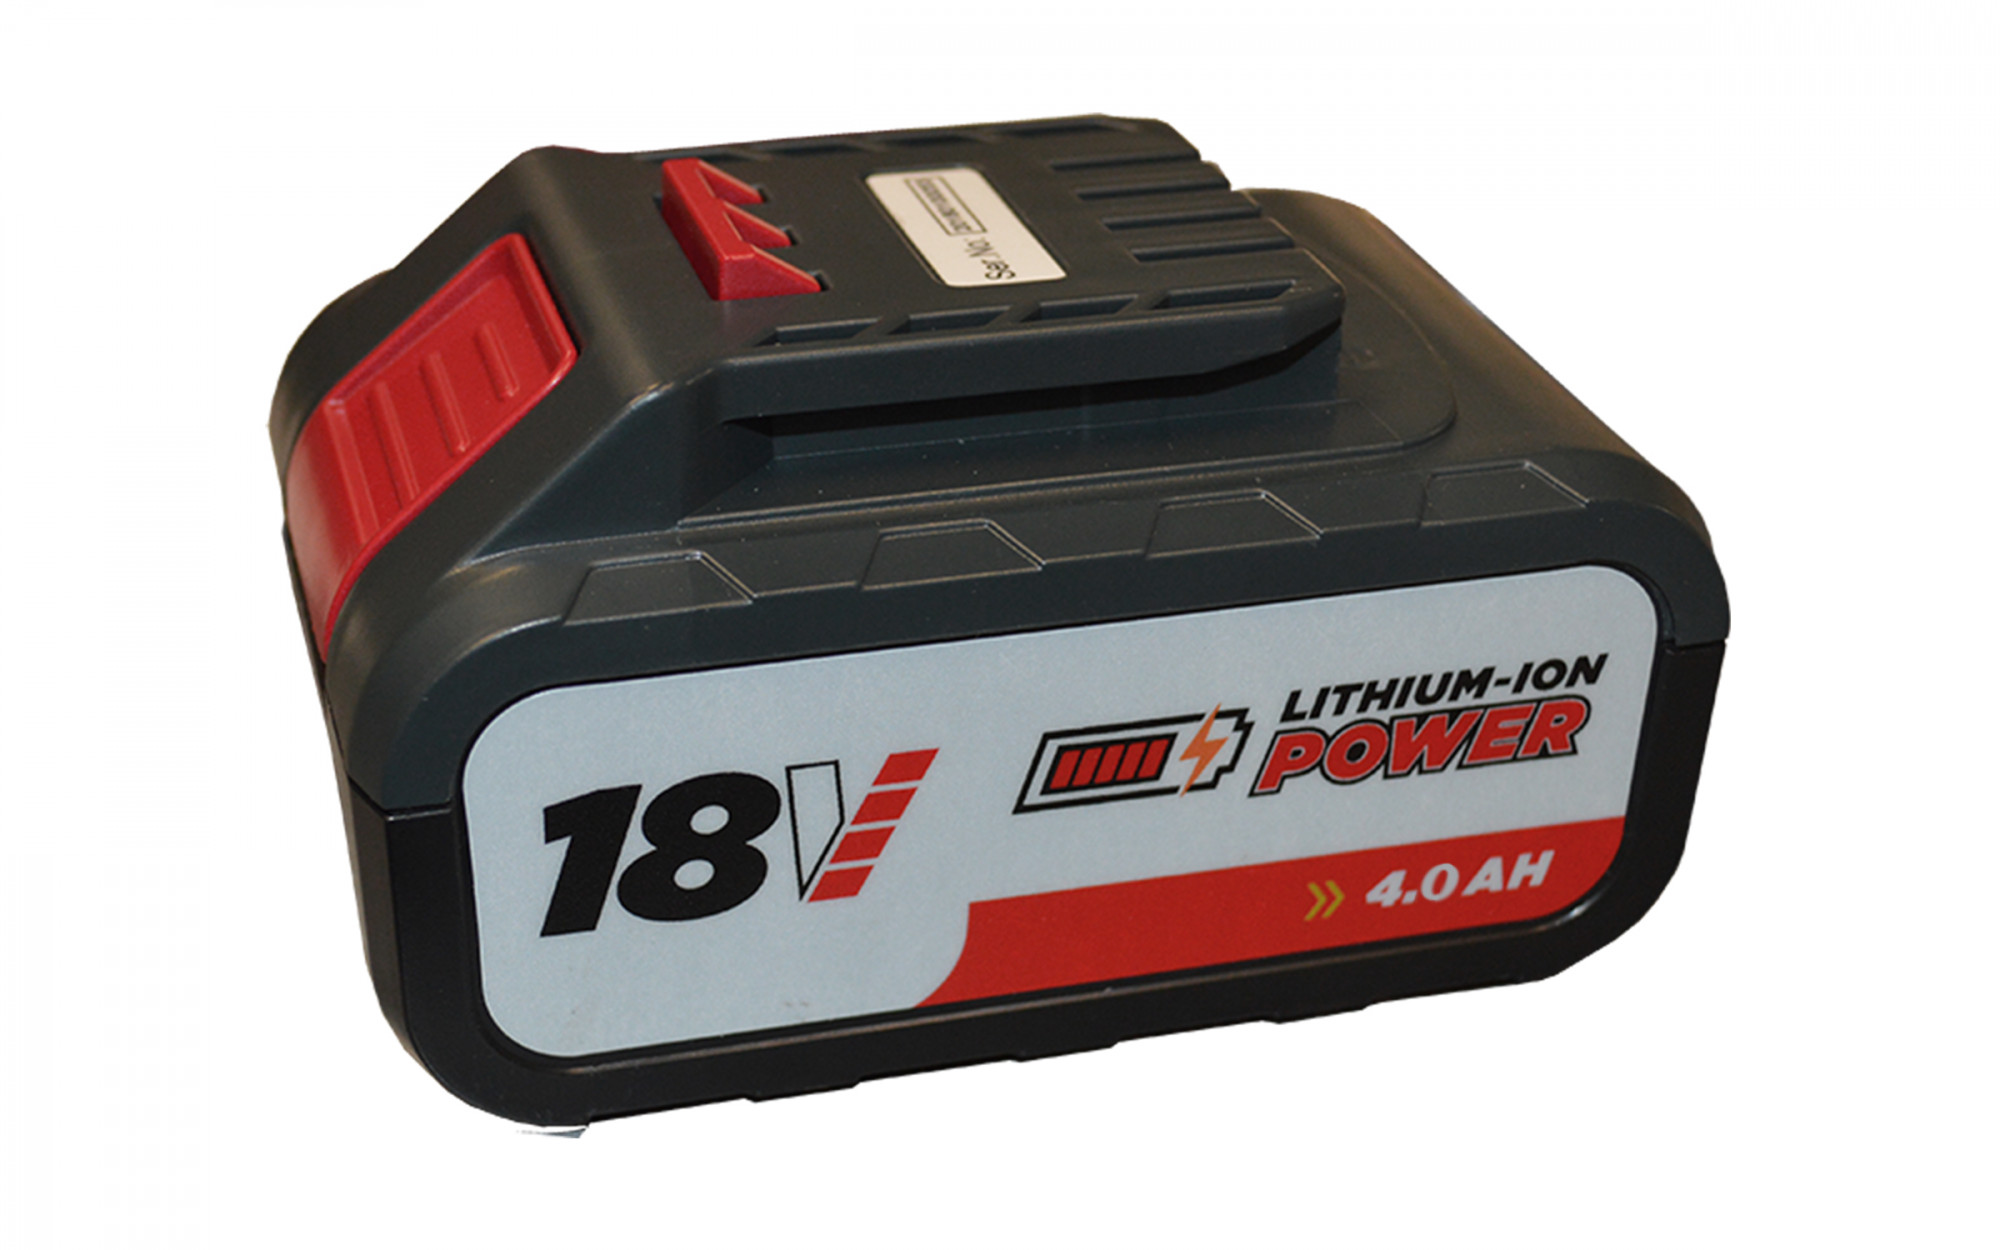 Battery Pack - 18V 4.0AH, Model#183613